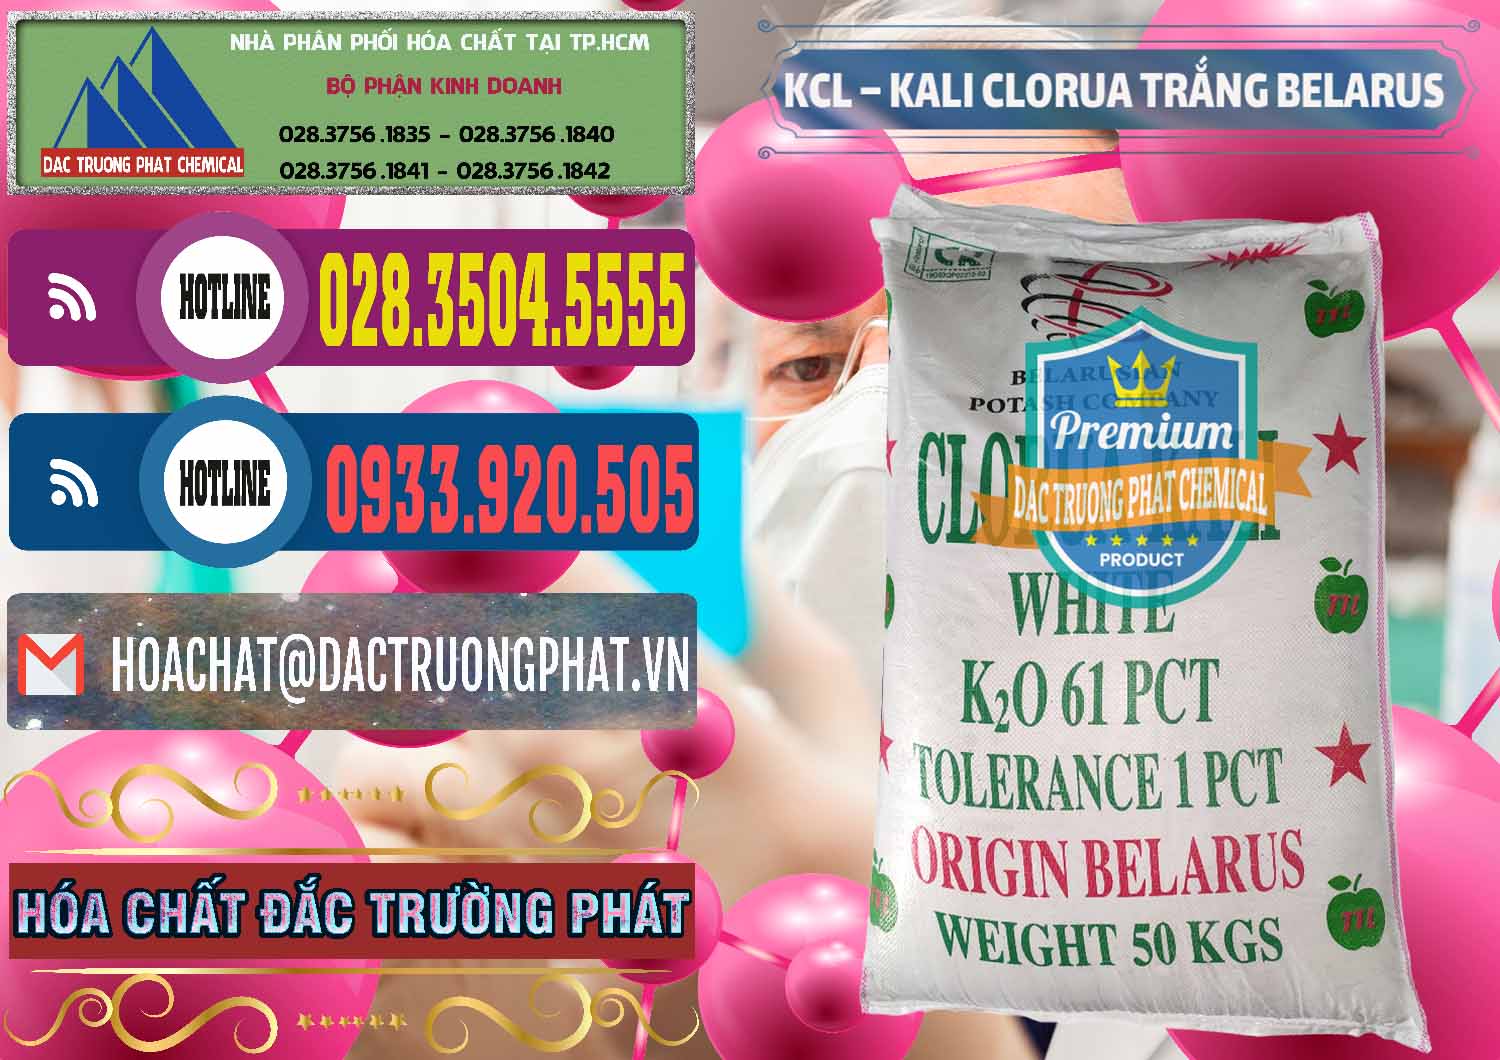 Đơn vị chuyên bán & cung cấp KCL – Kali Clorua Trắng Belarus - 0085 - Nơi chuyên cung ứng _ phân phối hóa chất tại TP.HCM - muabanhoachat.com.vn